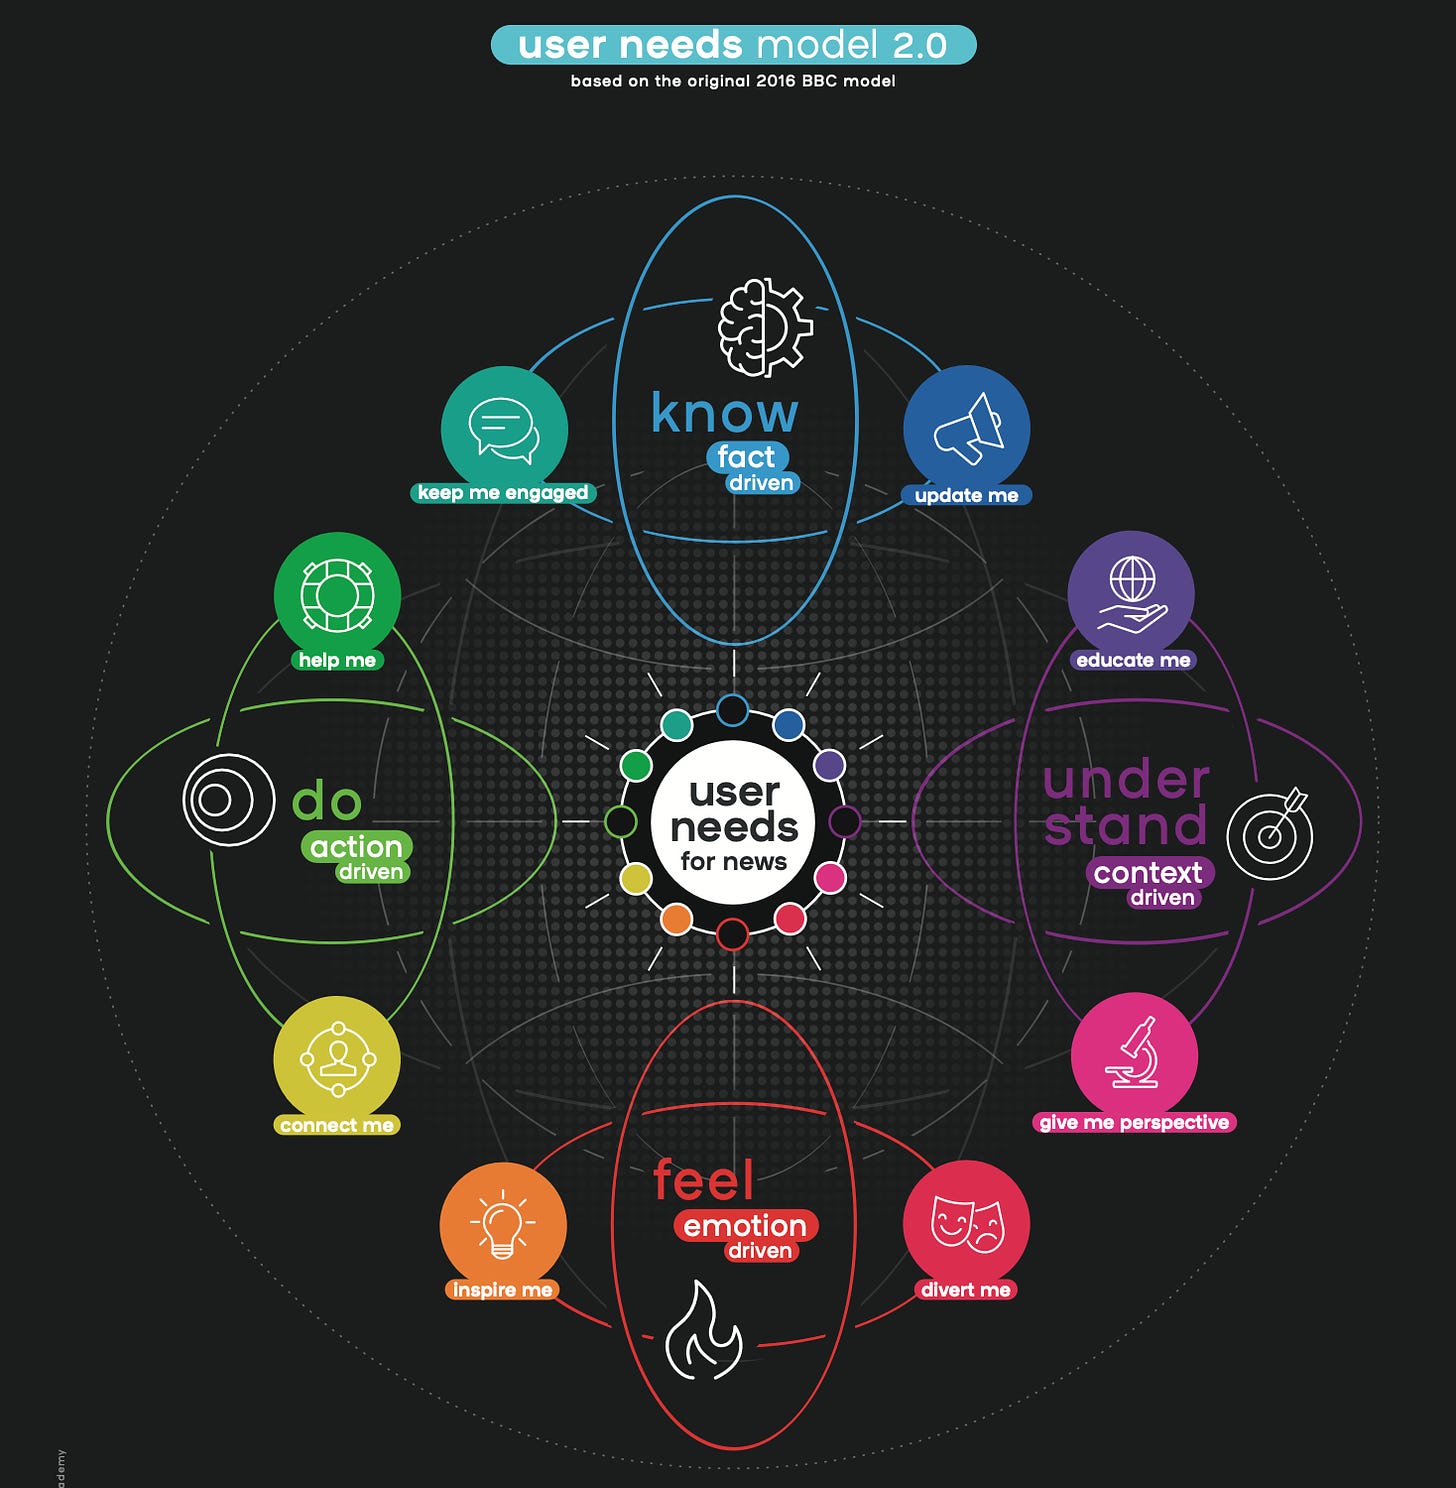 Modelo de necesidades: los 8 tipos de contenidos que las personas buscan